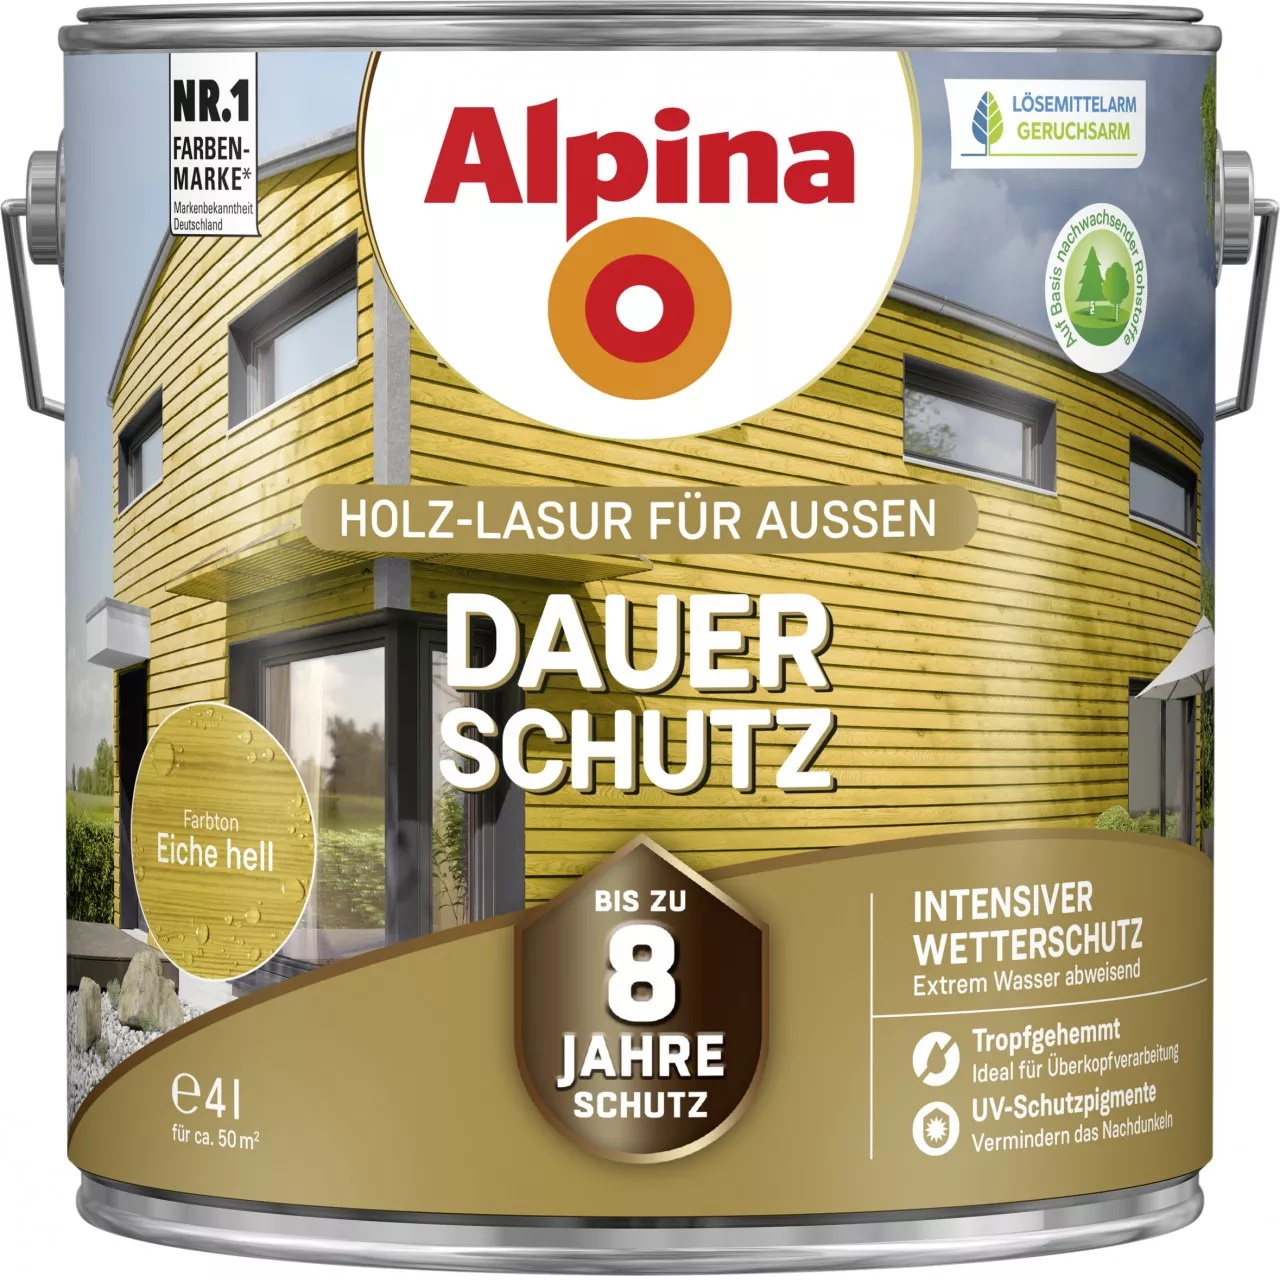 Alpina Dauer-Schutz Holz-Lasur für Außen Eiche hell 4 Liter